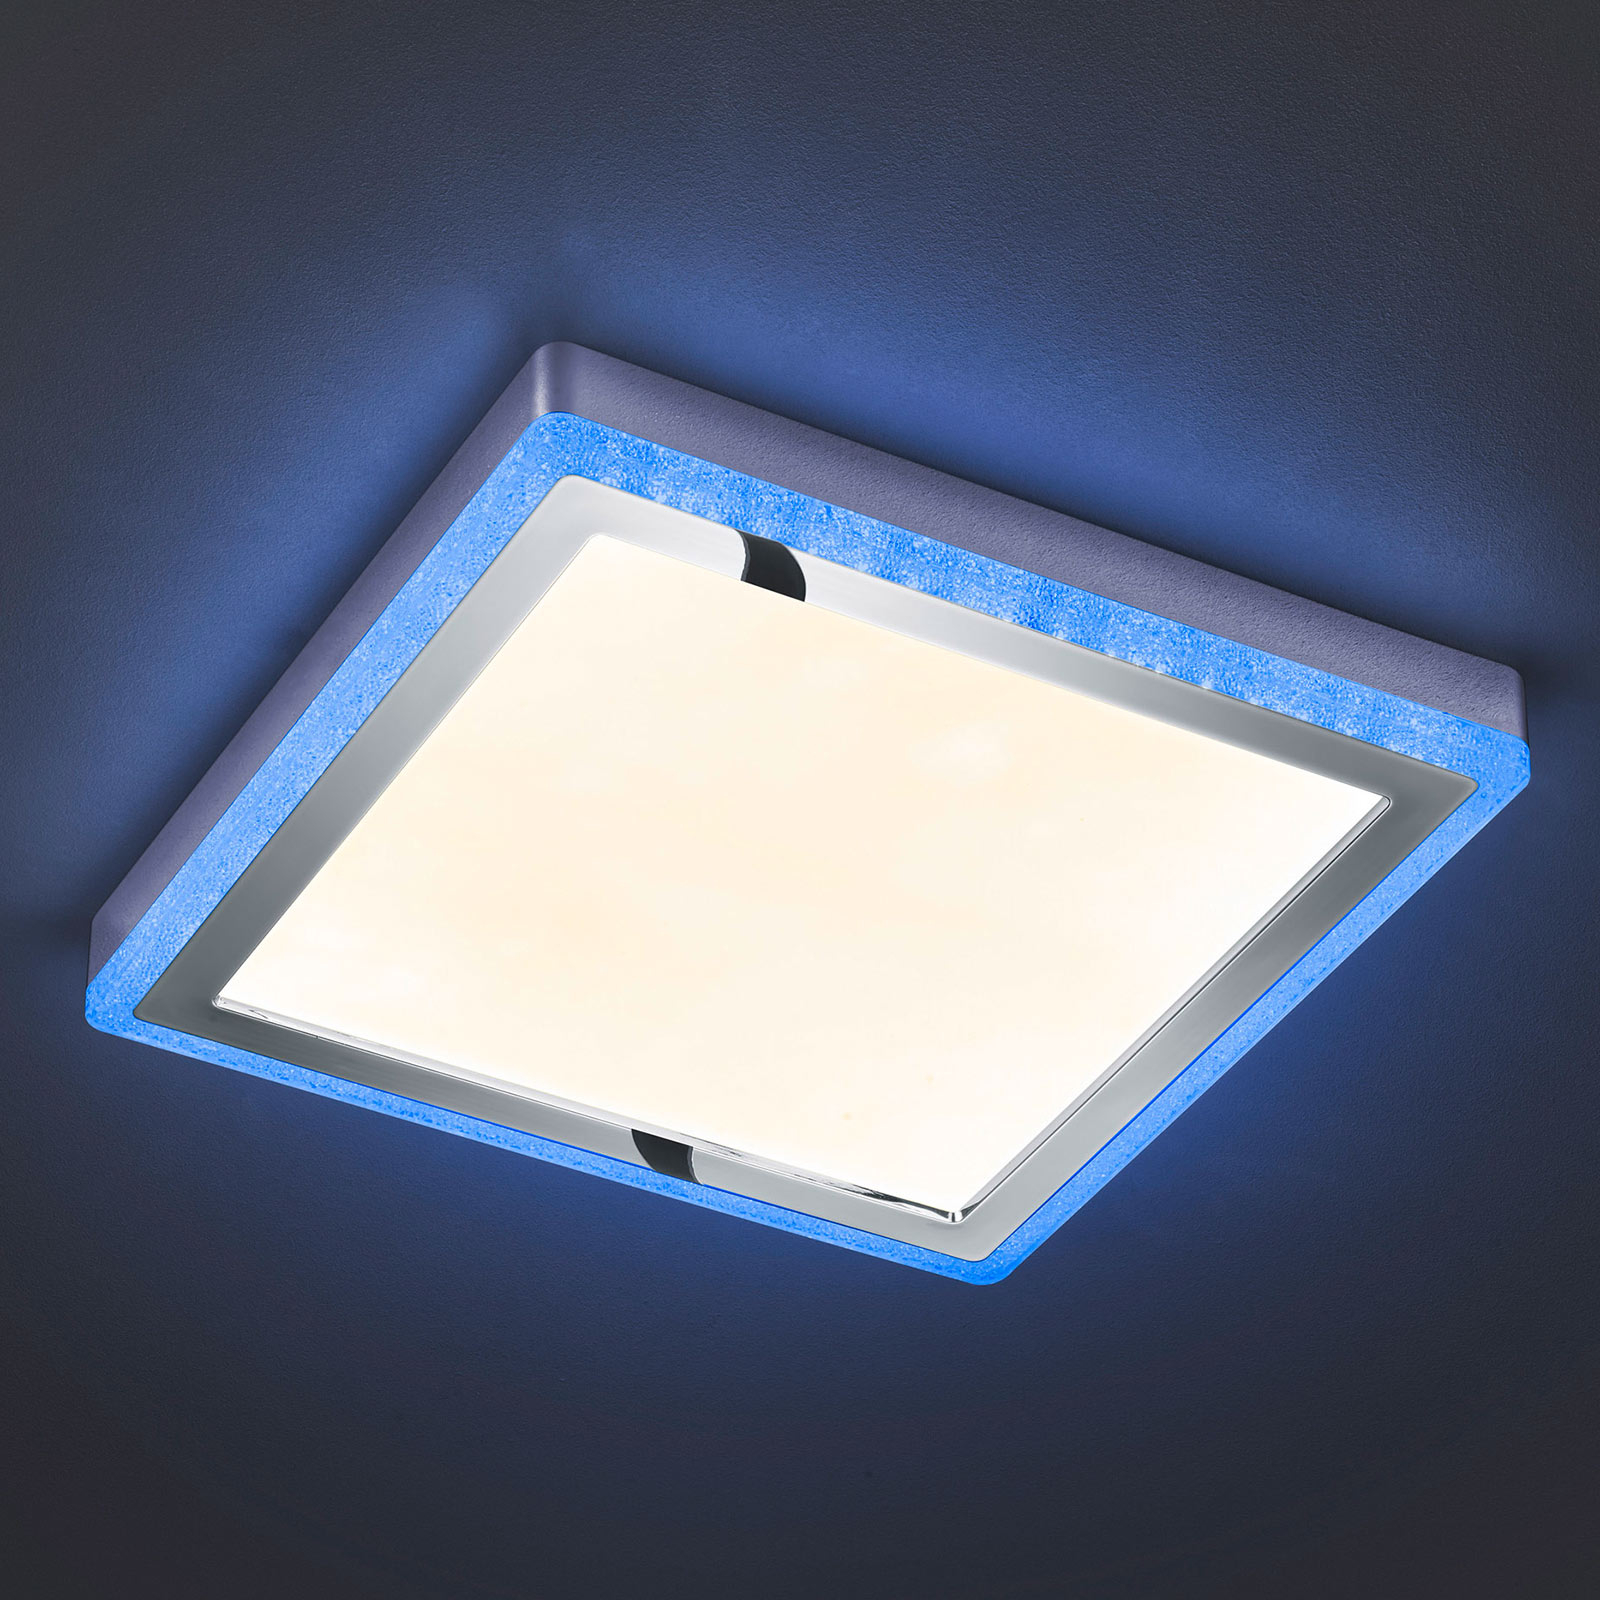 LED-Deckenleuchte Slide, weiß, eckig, 40x40 cm